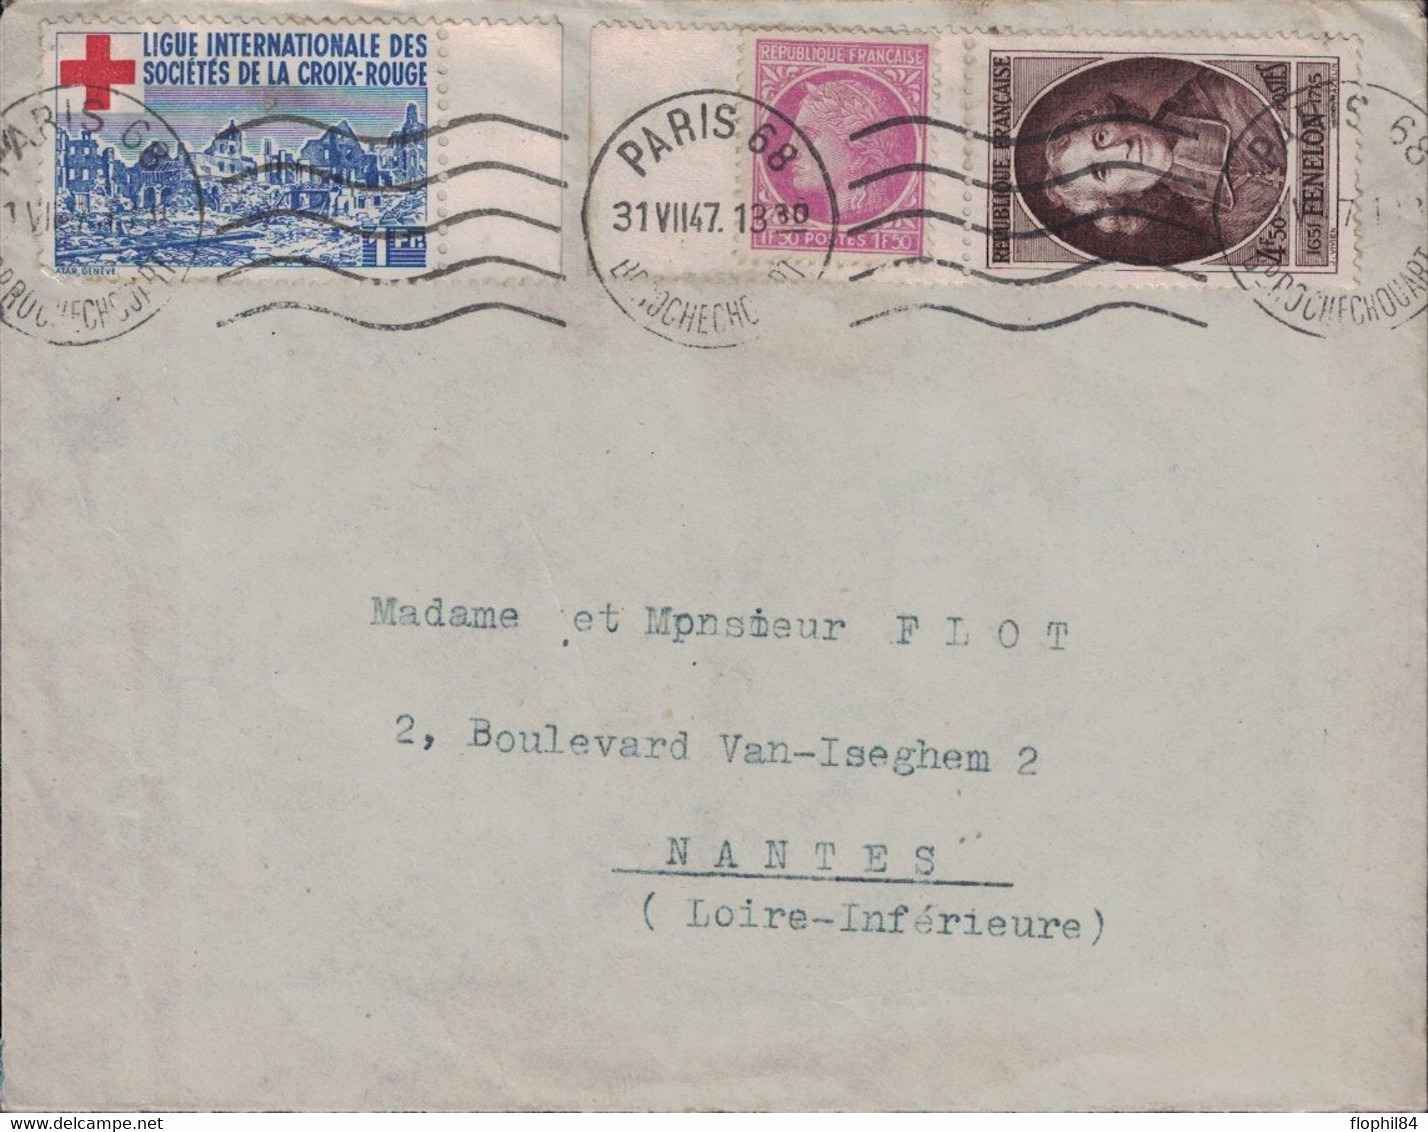 PARIS 68 - BD ROCHECHOUARD - TIMBRE DE DE LA LIGUE DES STES DE LA CROIX ROUGE - BEL AFFRANCHISSEMENT - 31-7-1947. - Rode Kruis